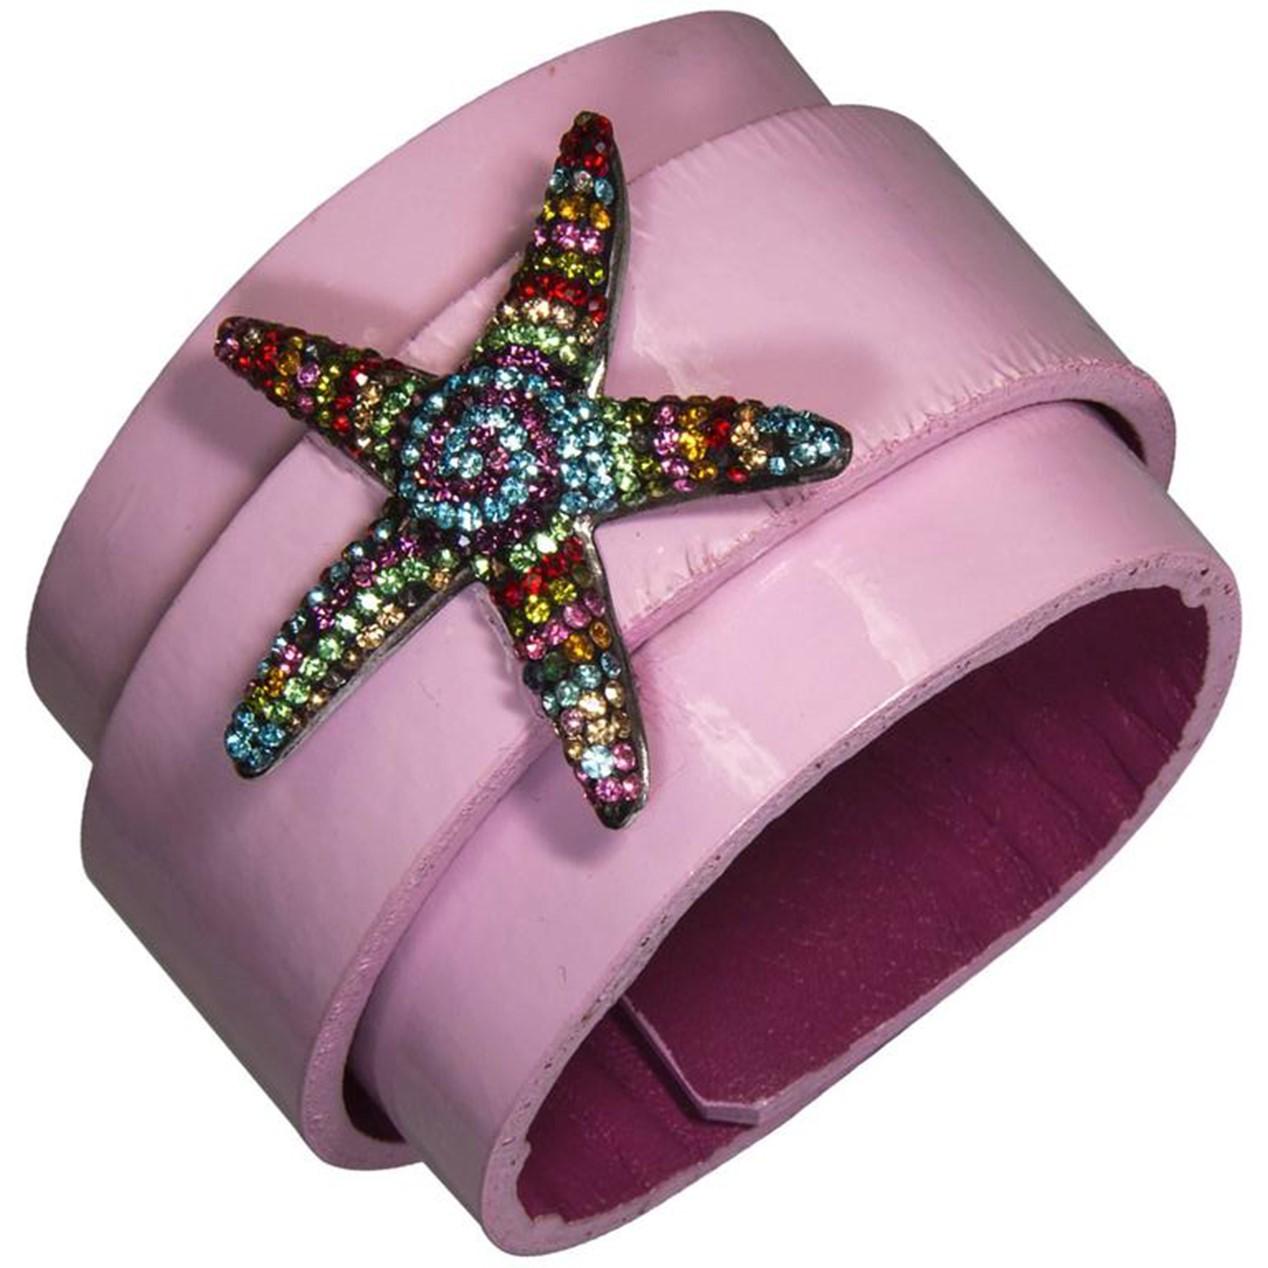 Magnifique étoile de mer en argent sterling incrustée de CZ multicolores sur un bracelet manchette en cuir verni rose ; réglable, il convient aux poignets de petite à moyenne taille. Ajoutez un peu de magie et votre propre style unique au quotidien